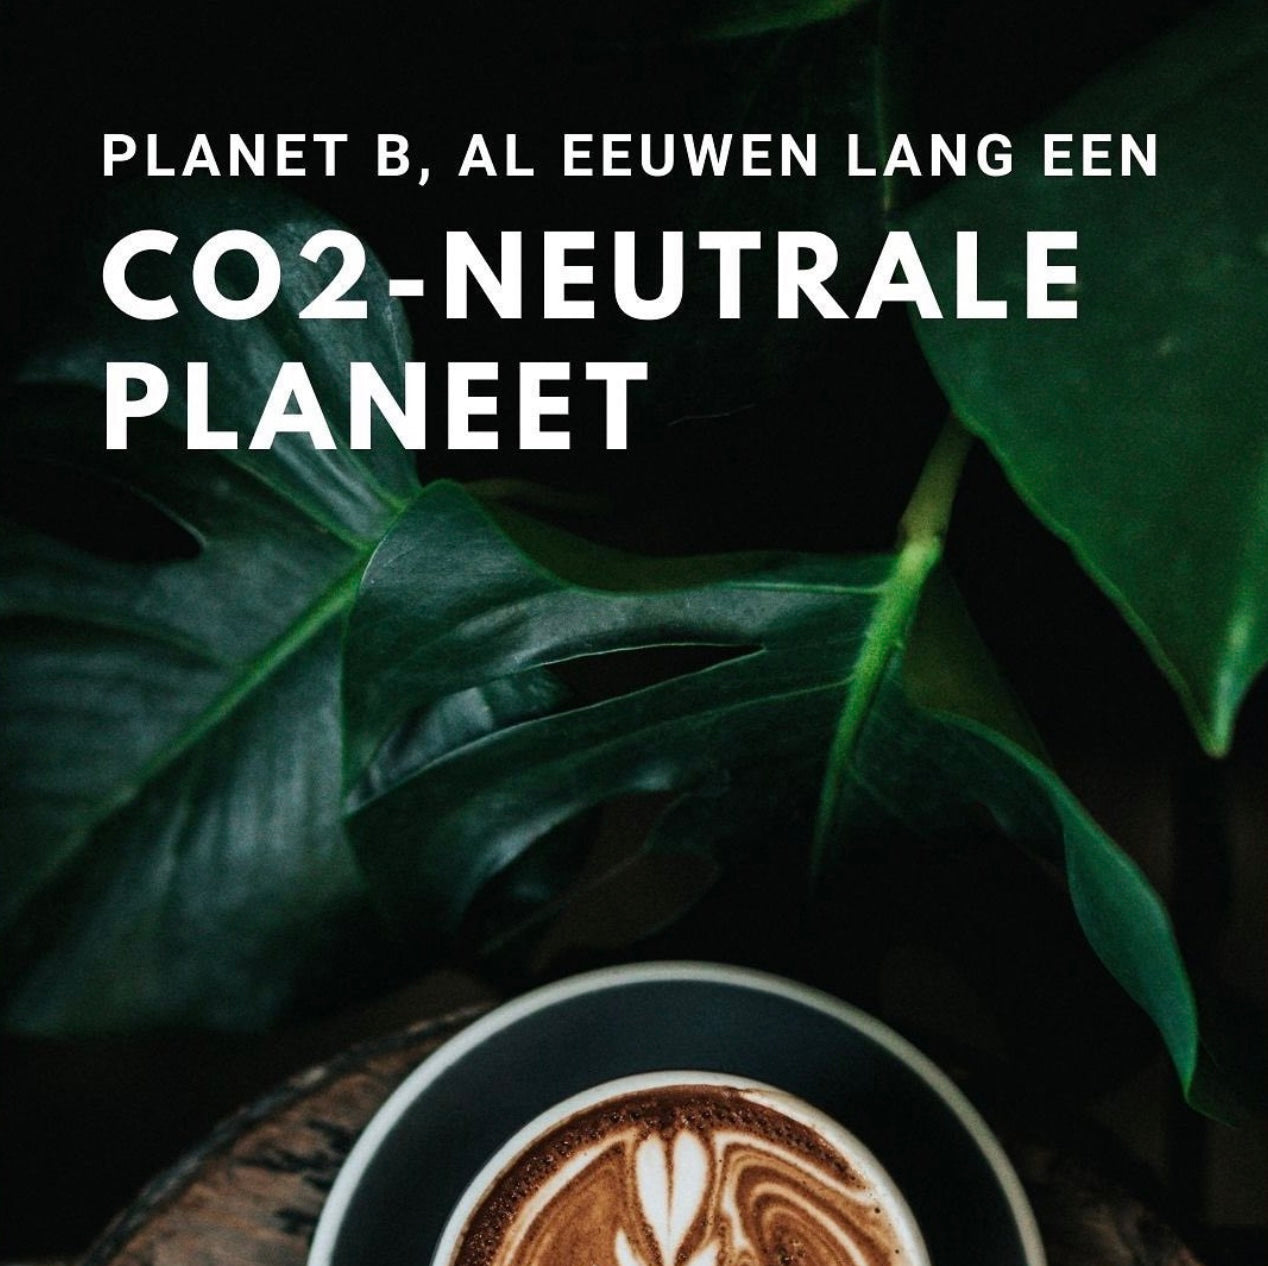 Planet B, al eeuwen lang een CO2-neutrale planeet.